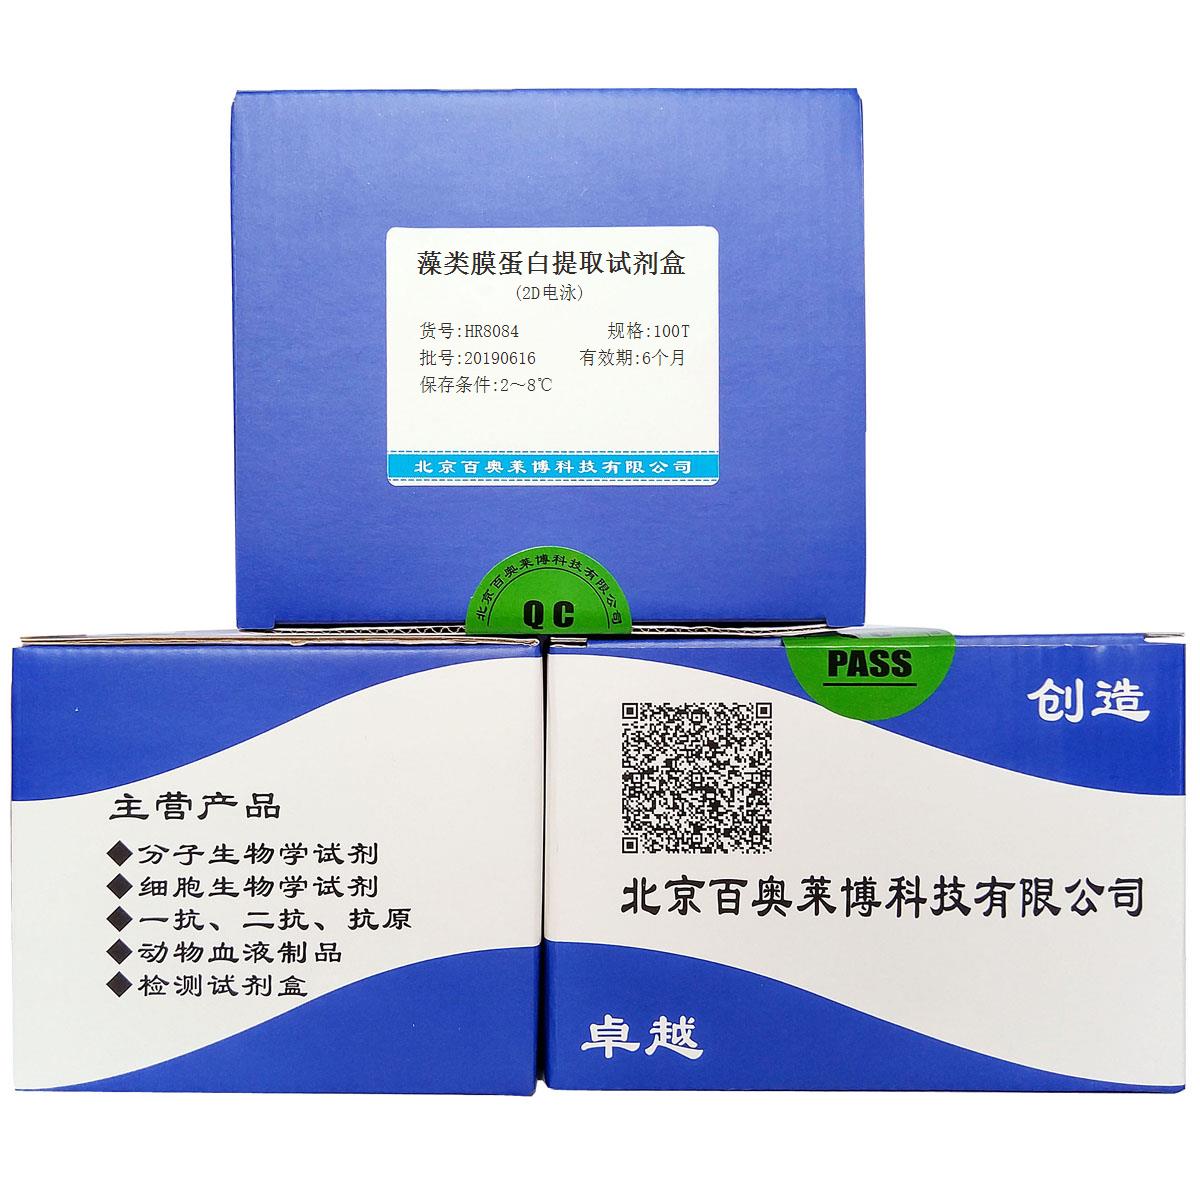 藻类膜蛋白提取试剂盒(2D电泳)北京厂家